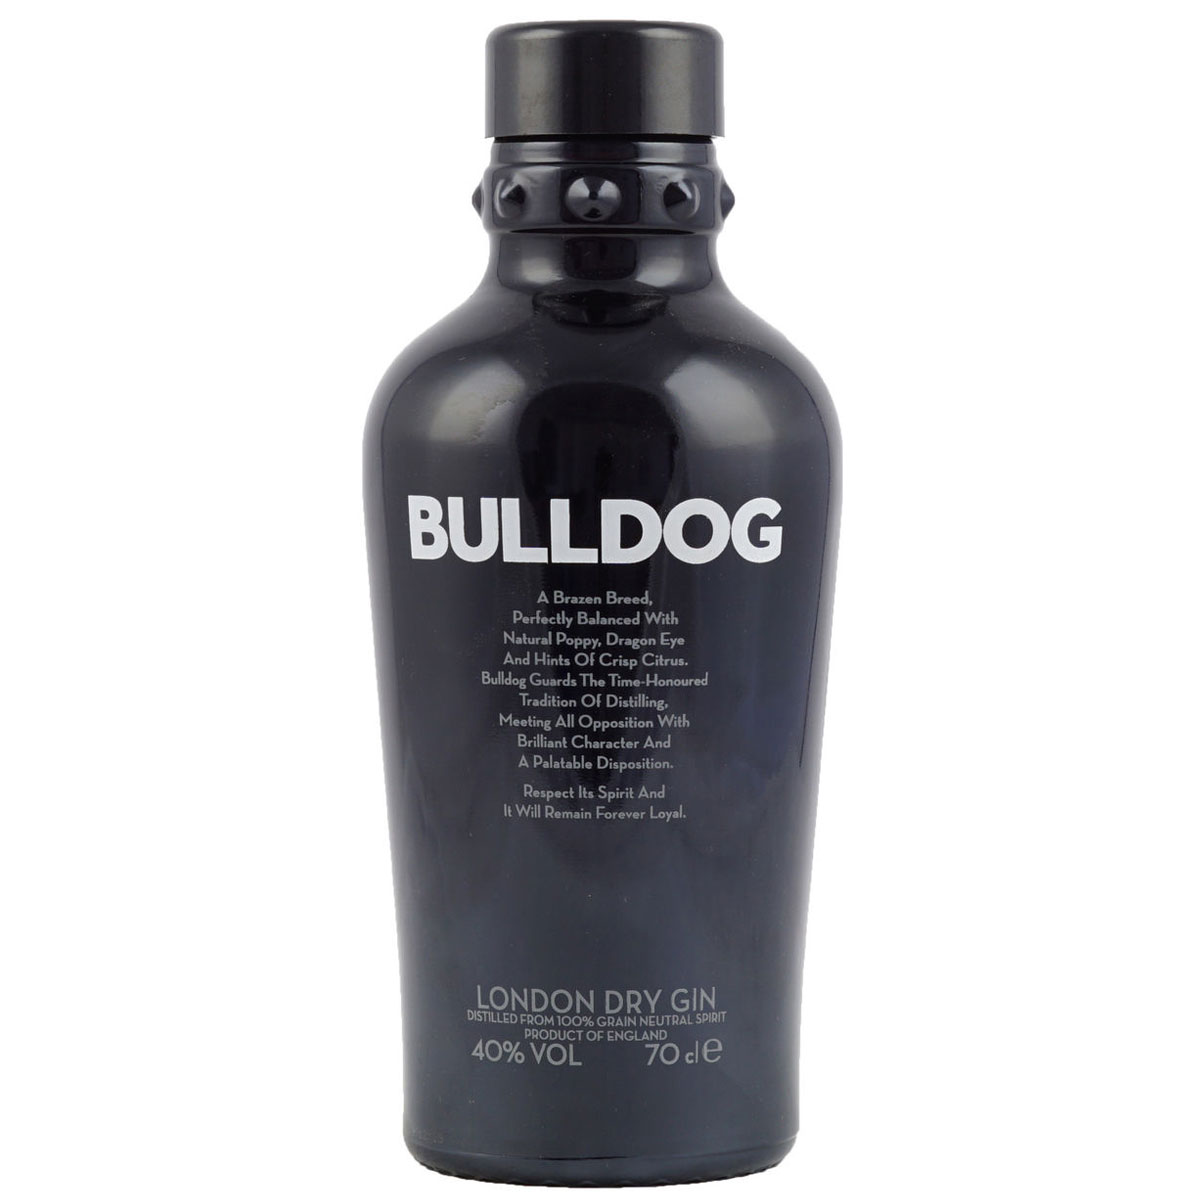 a bottle of bulldog gin